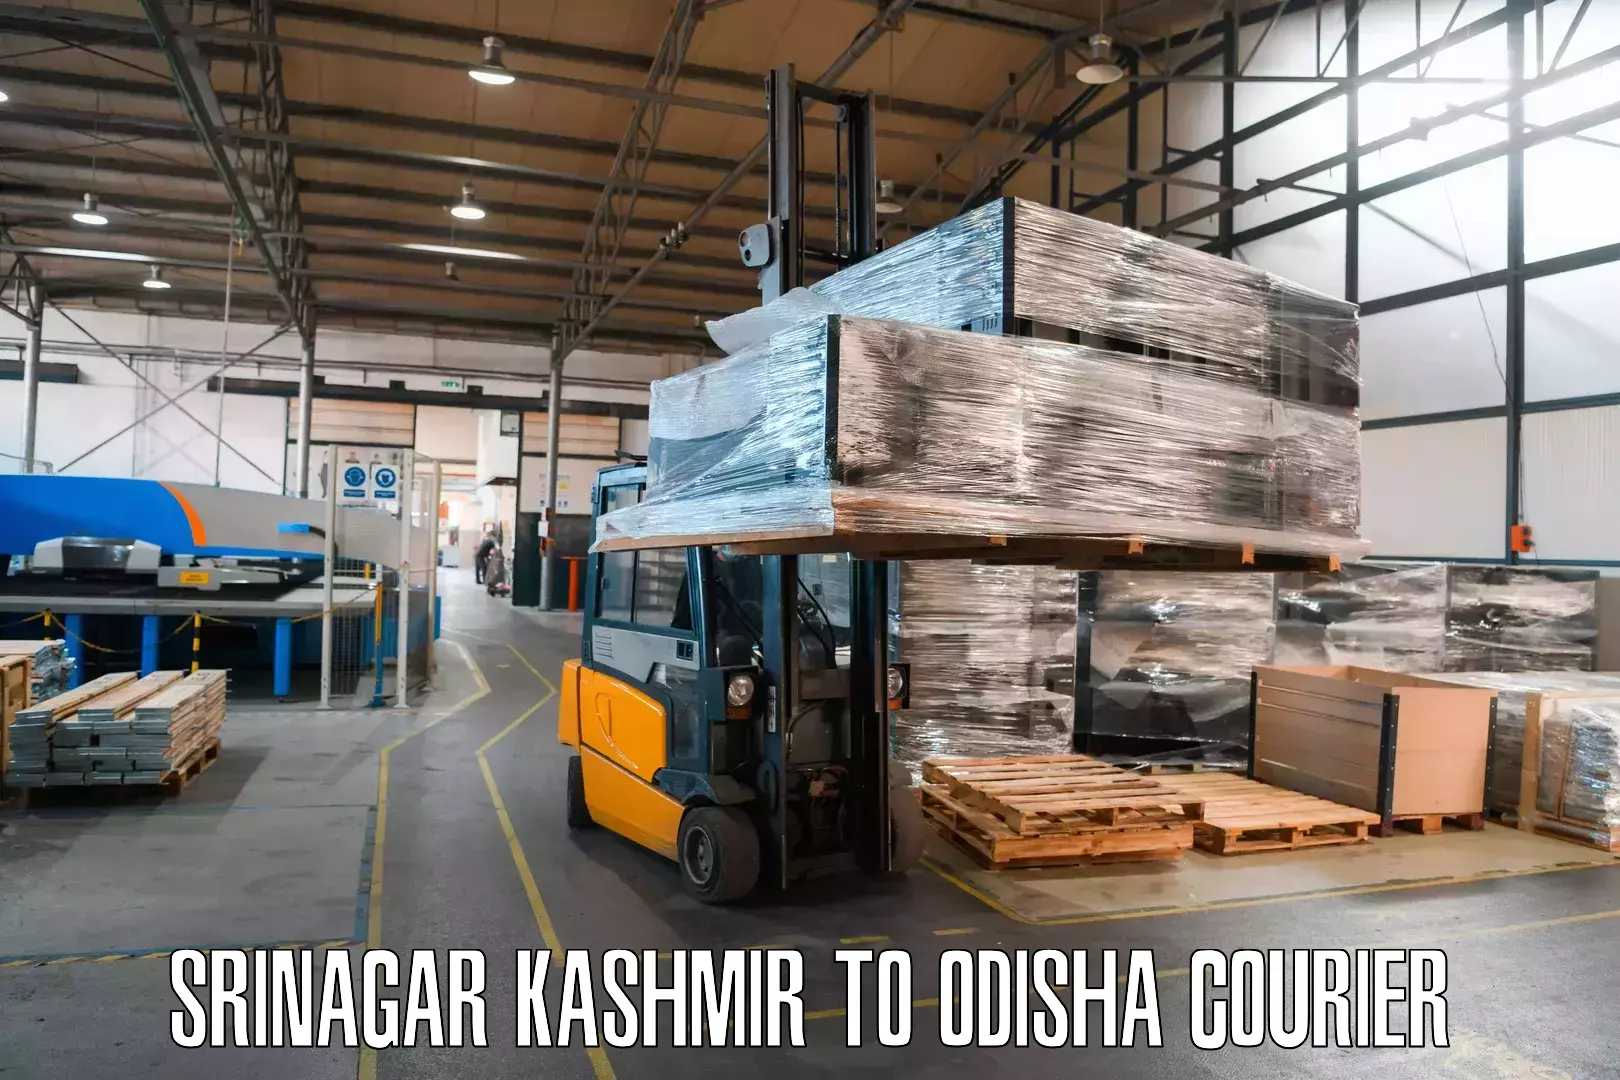 Next-generation courier services Srinagar Kashmir to Tihidi